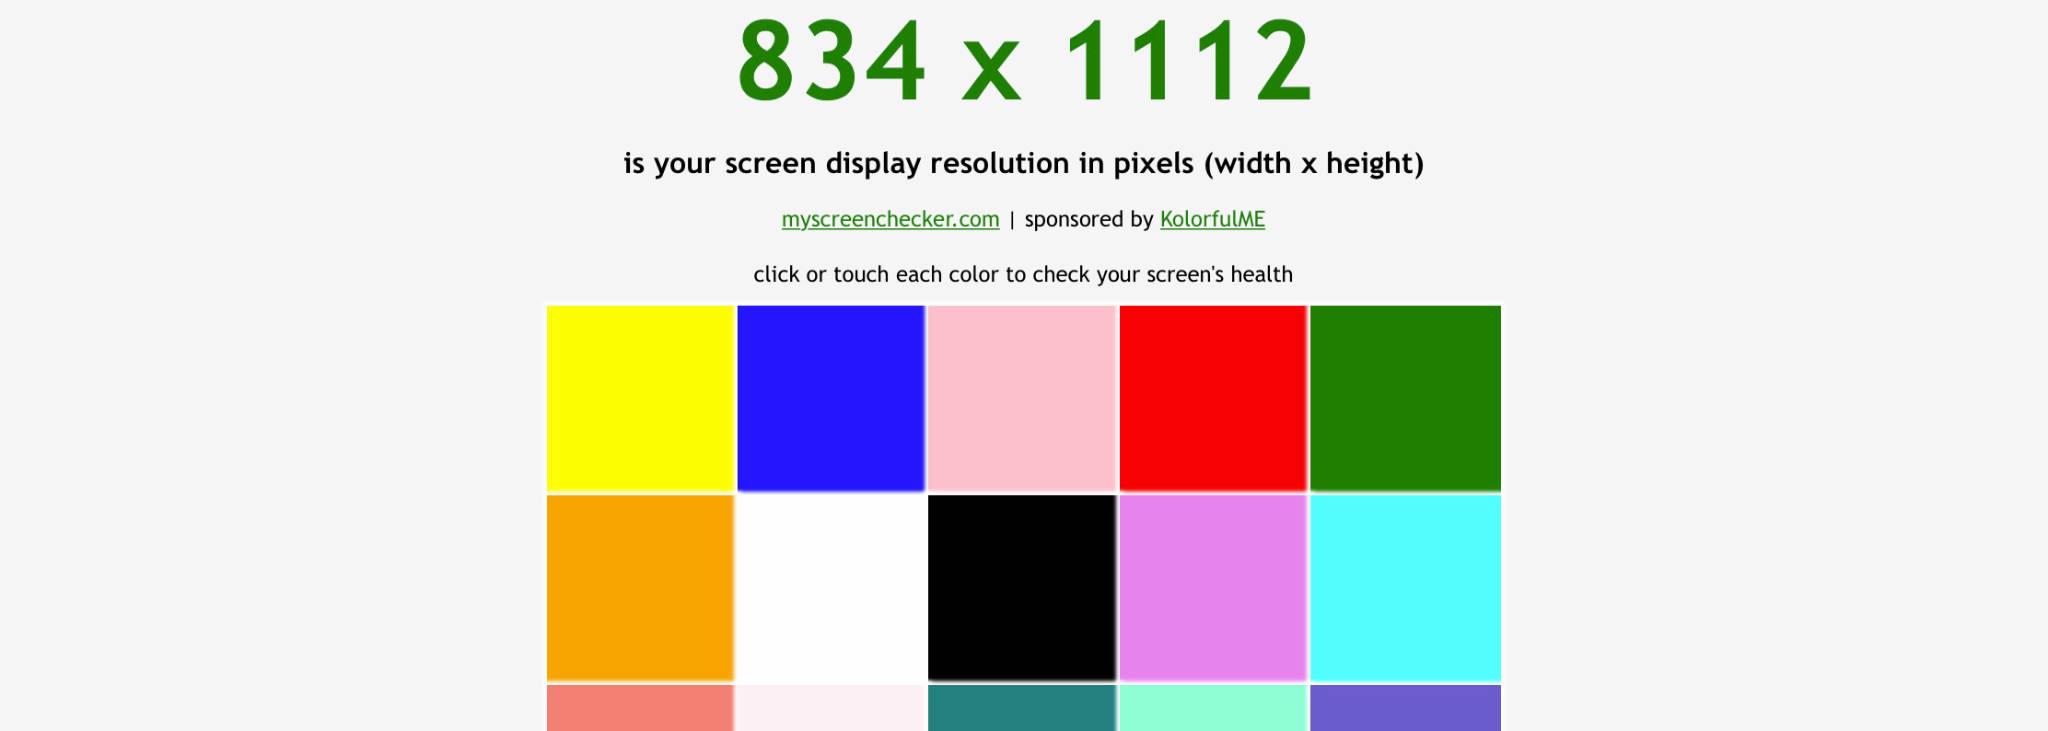 Trình duyệt không phải luôn đáng tin cậy để thử màu màn hình của bạn. Với bức ảnh kiểm tra màu sắc của chúng tôi, bạn có thể dễ dàng tìm ra chính xác những màu sắc phù hợp với màn hình của mình.